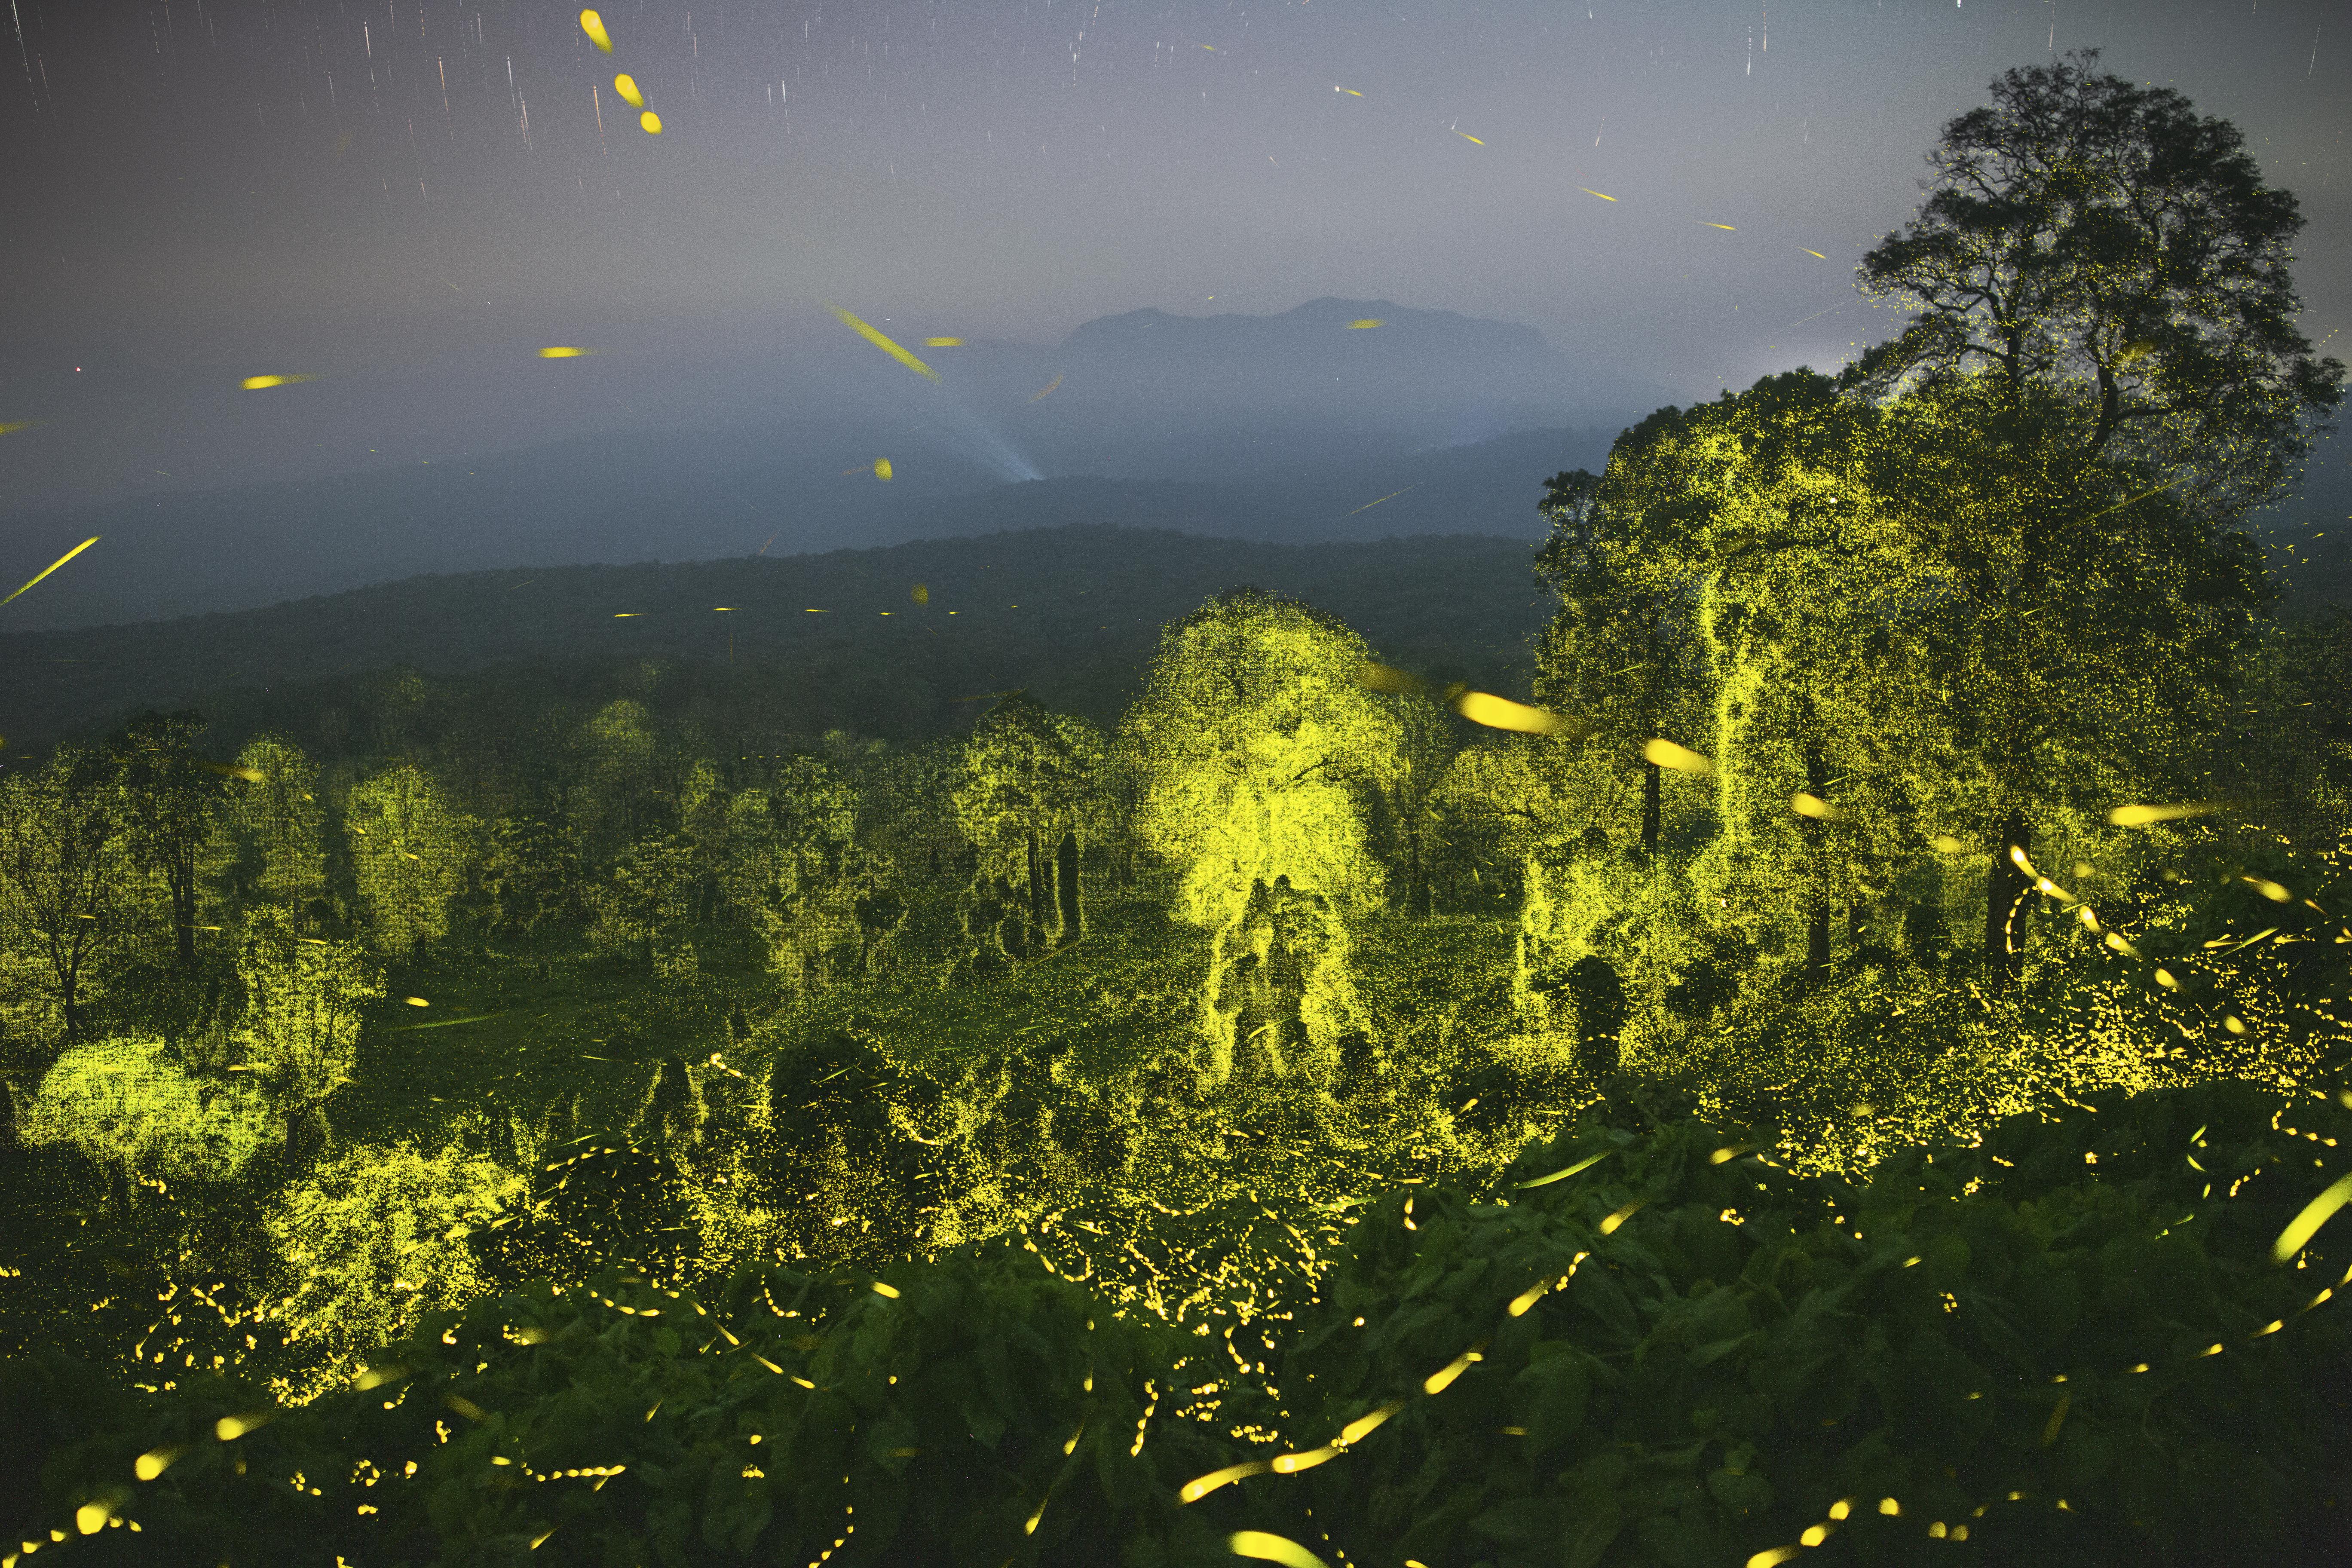 Bioluminescent fireflies